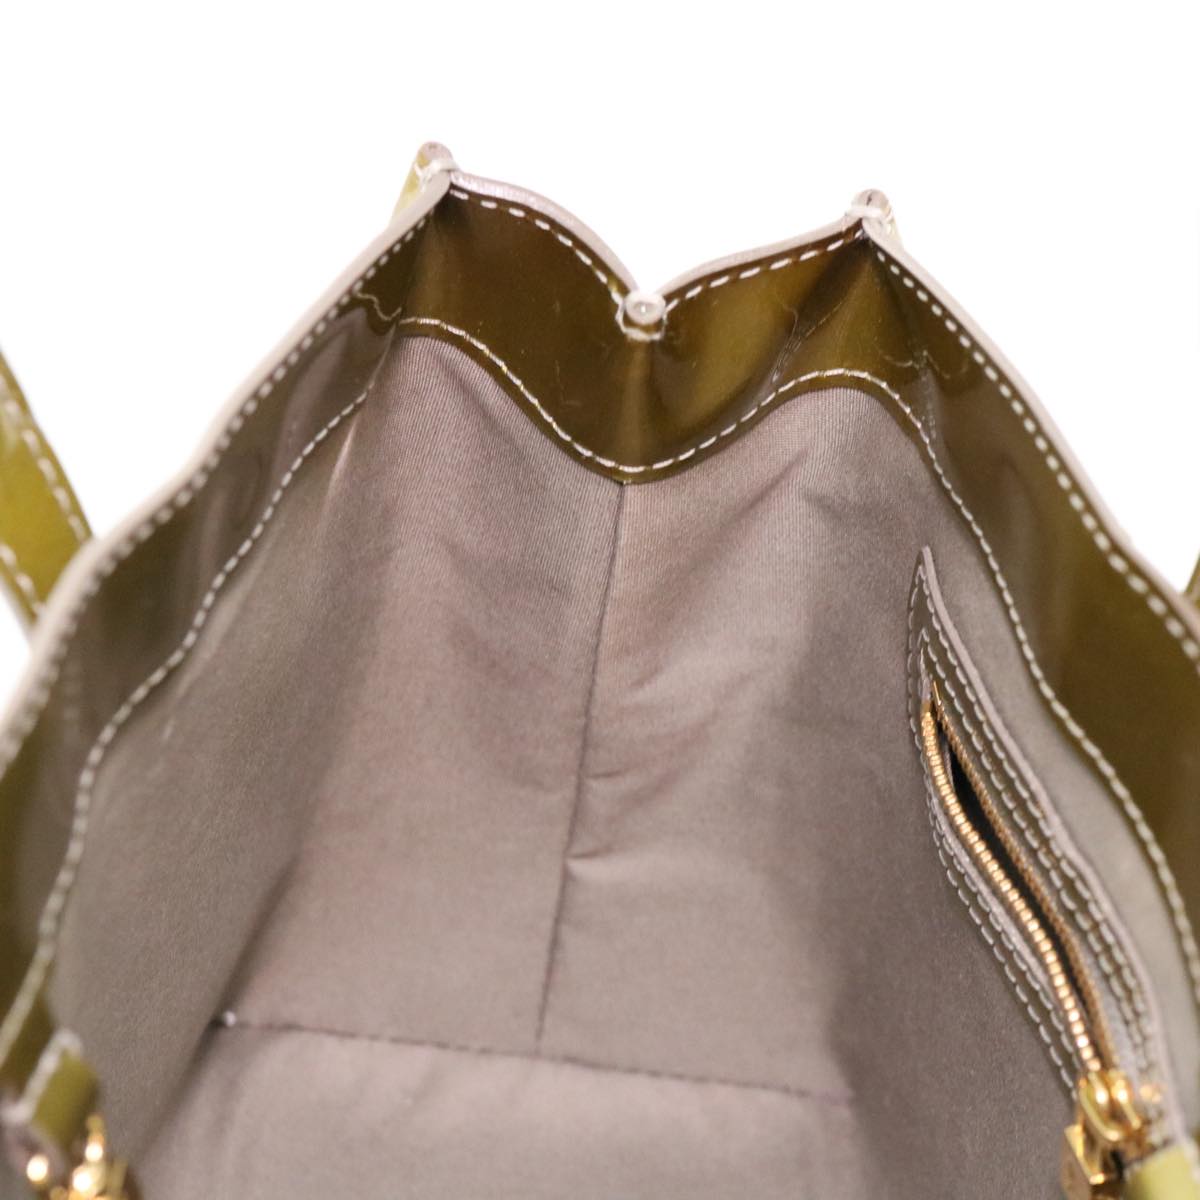 LOUIS VUITTON Vernis Wilshire PM Hand Bag Gris Art Deco M91627 LV Auth 37951